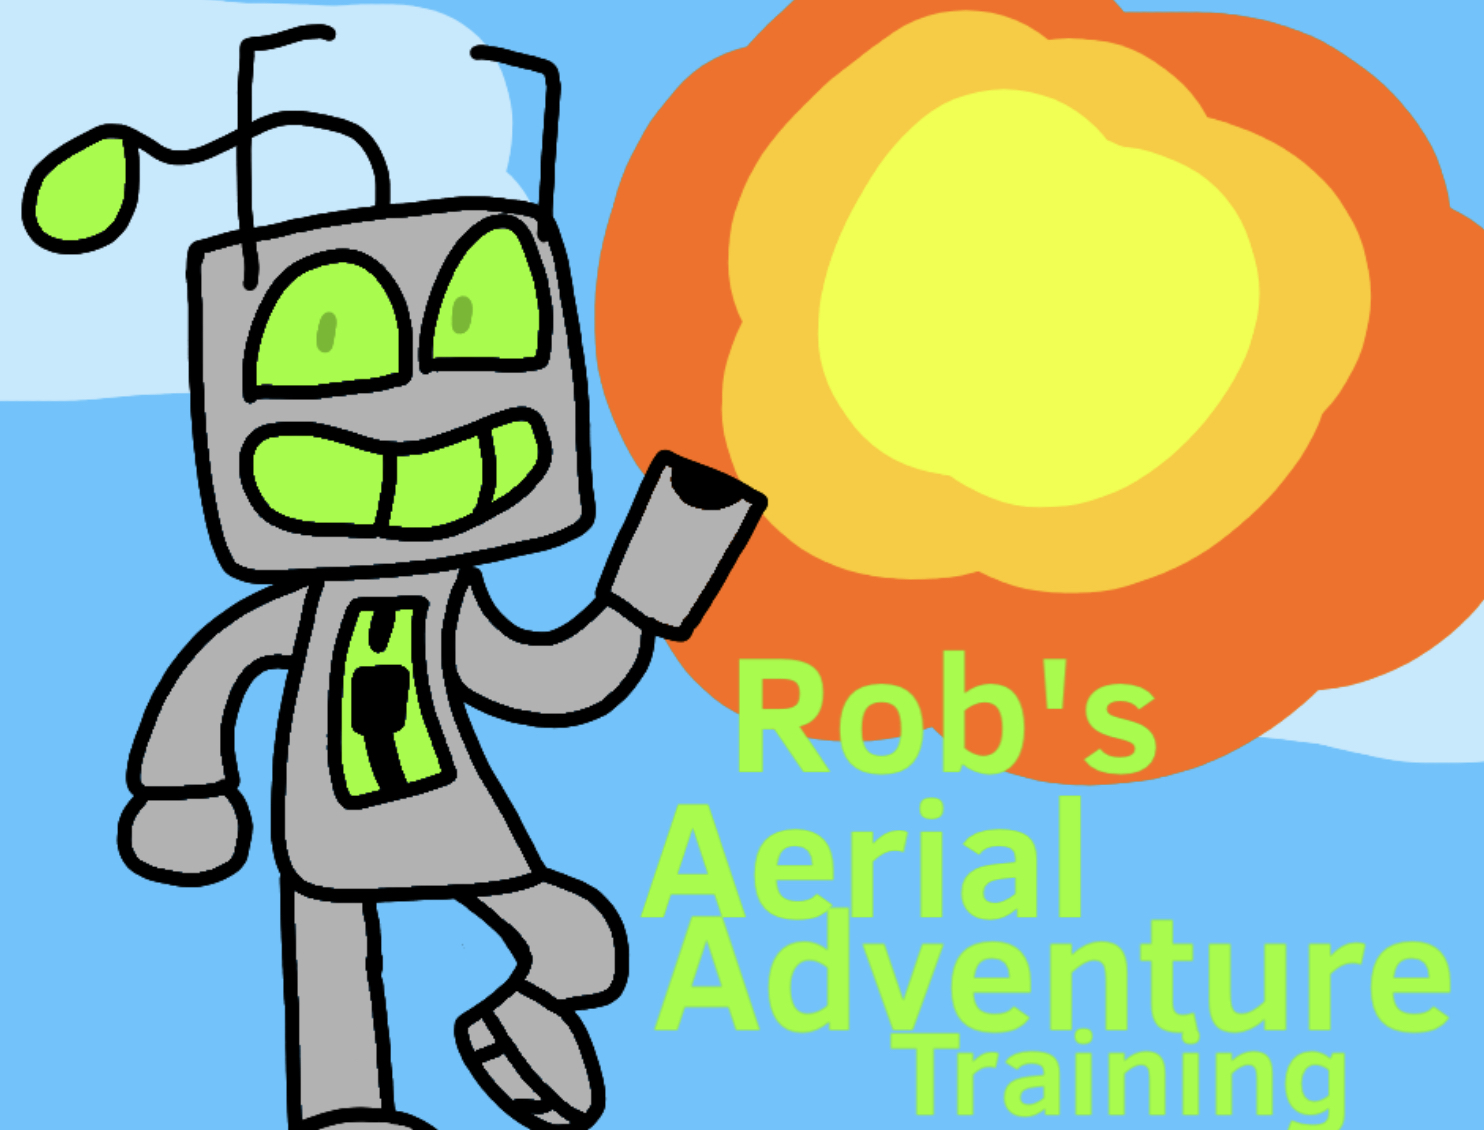 Rob's Aerial Adventure Training